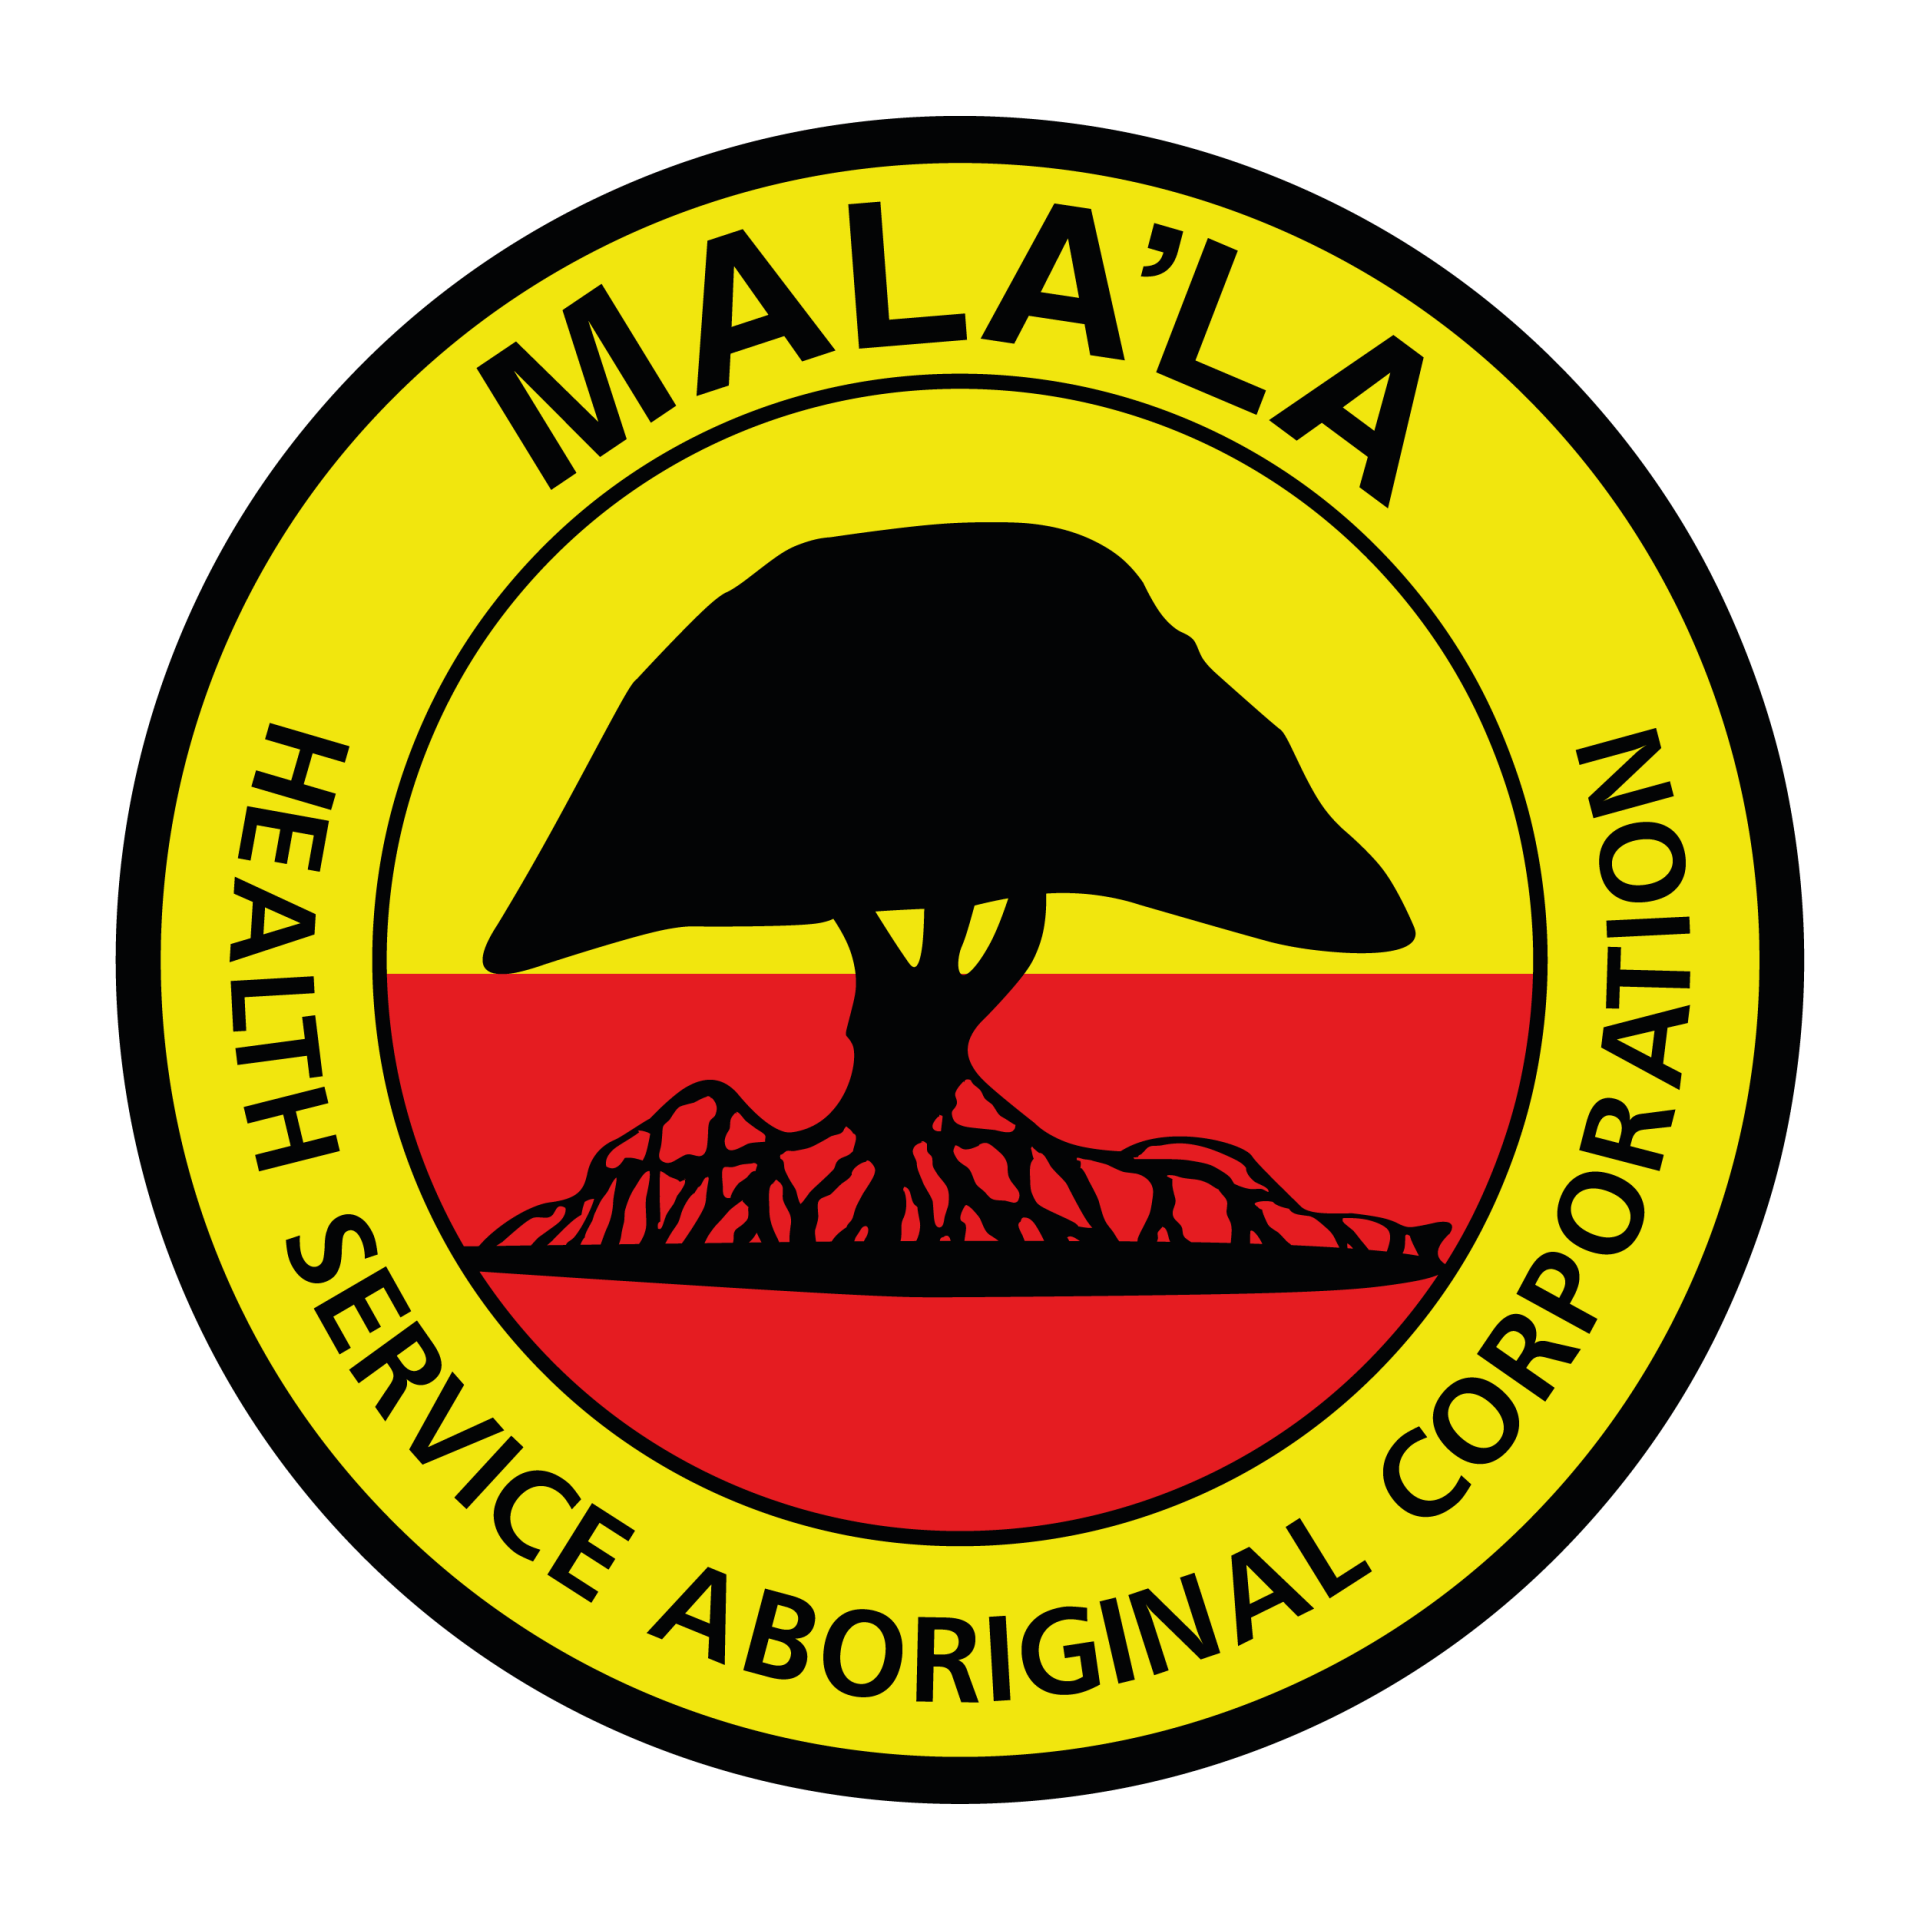 A logo for mala 'la health service aboriginal corporation